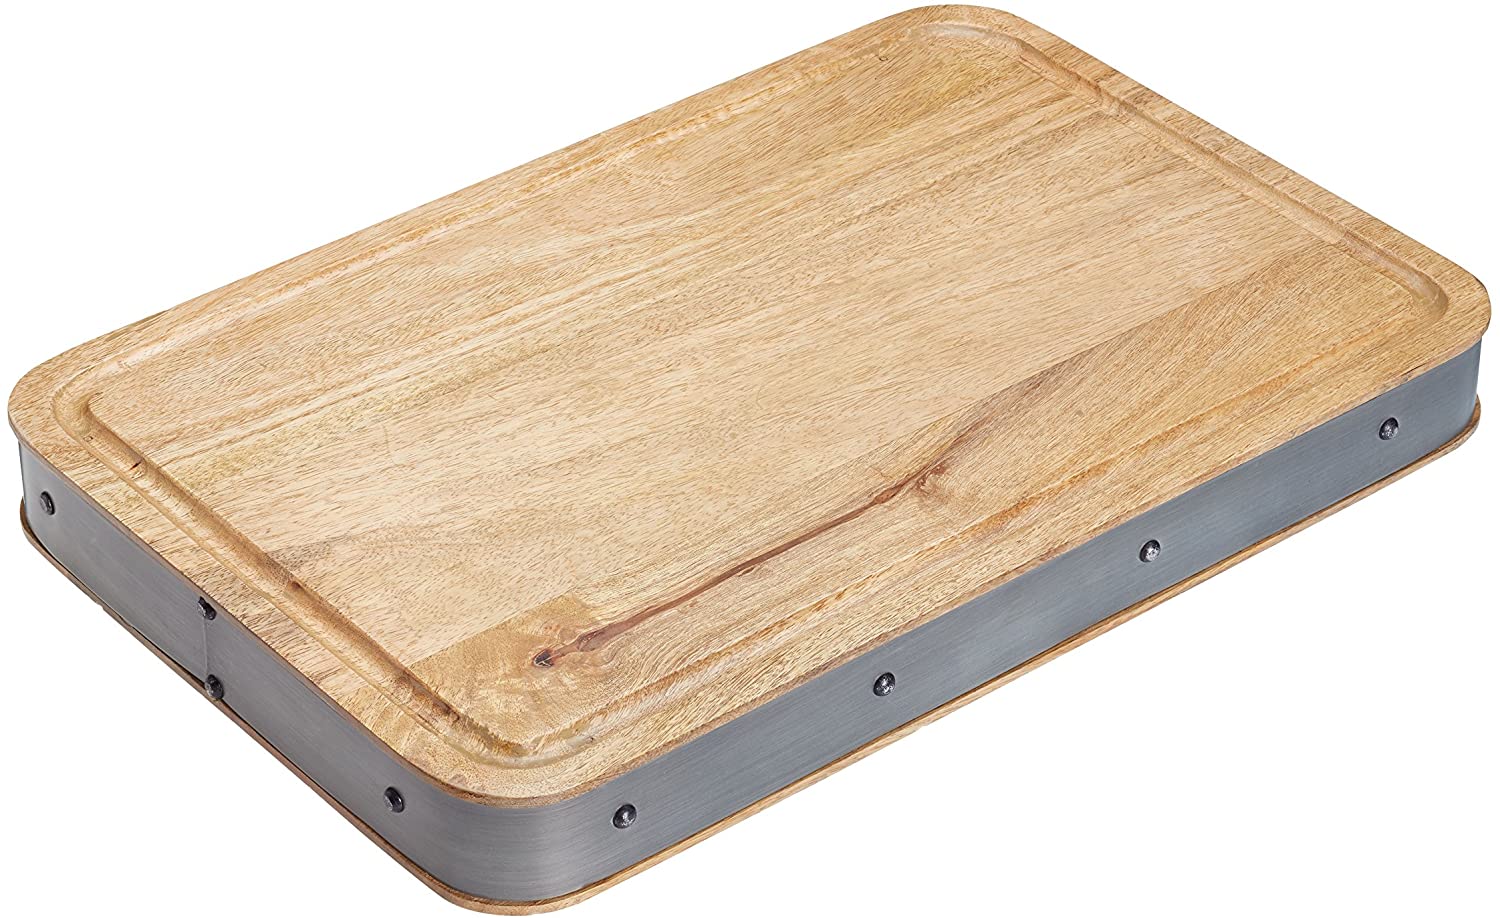 Kitchen Craft Industrial Kitchen Chopping Board 48 x 32 x 5 cm, Wood, Beige/Grey, 30 x 18 x 18 cm